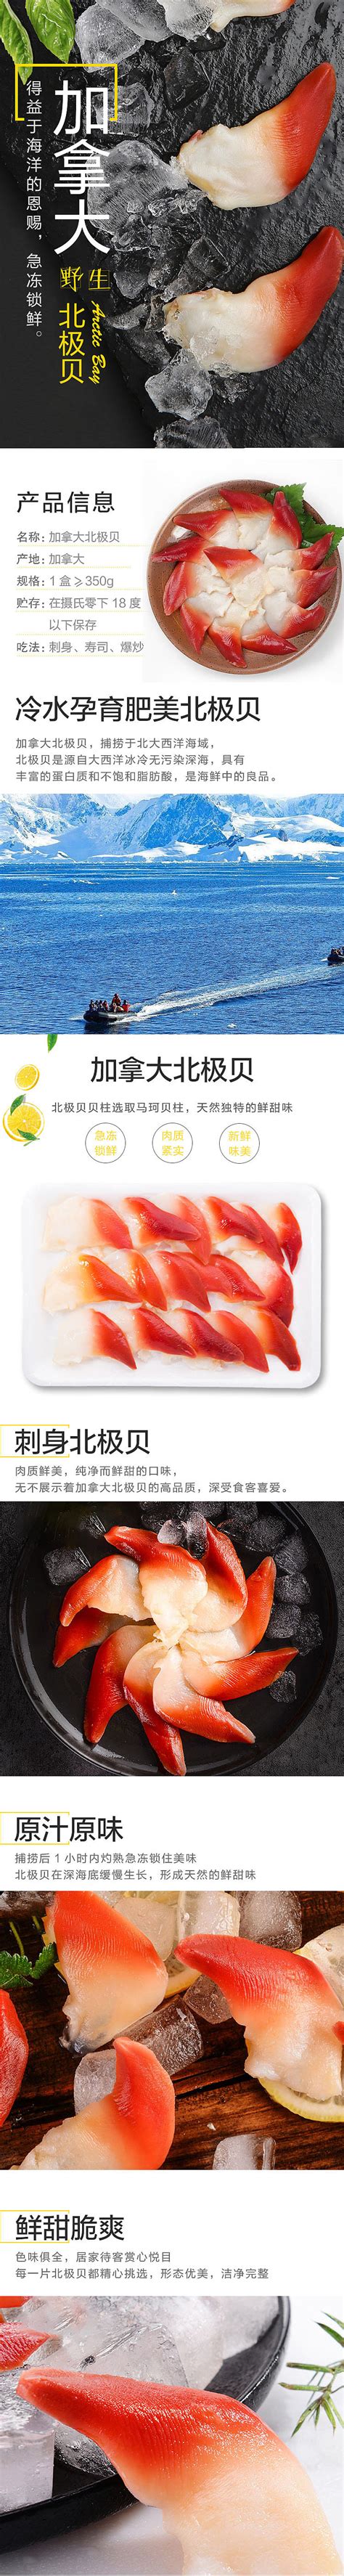 海鲜盛宴海鲜水产宣传实拍海报图片下载 - 觅知网